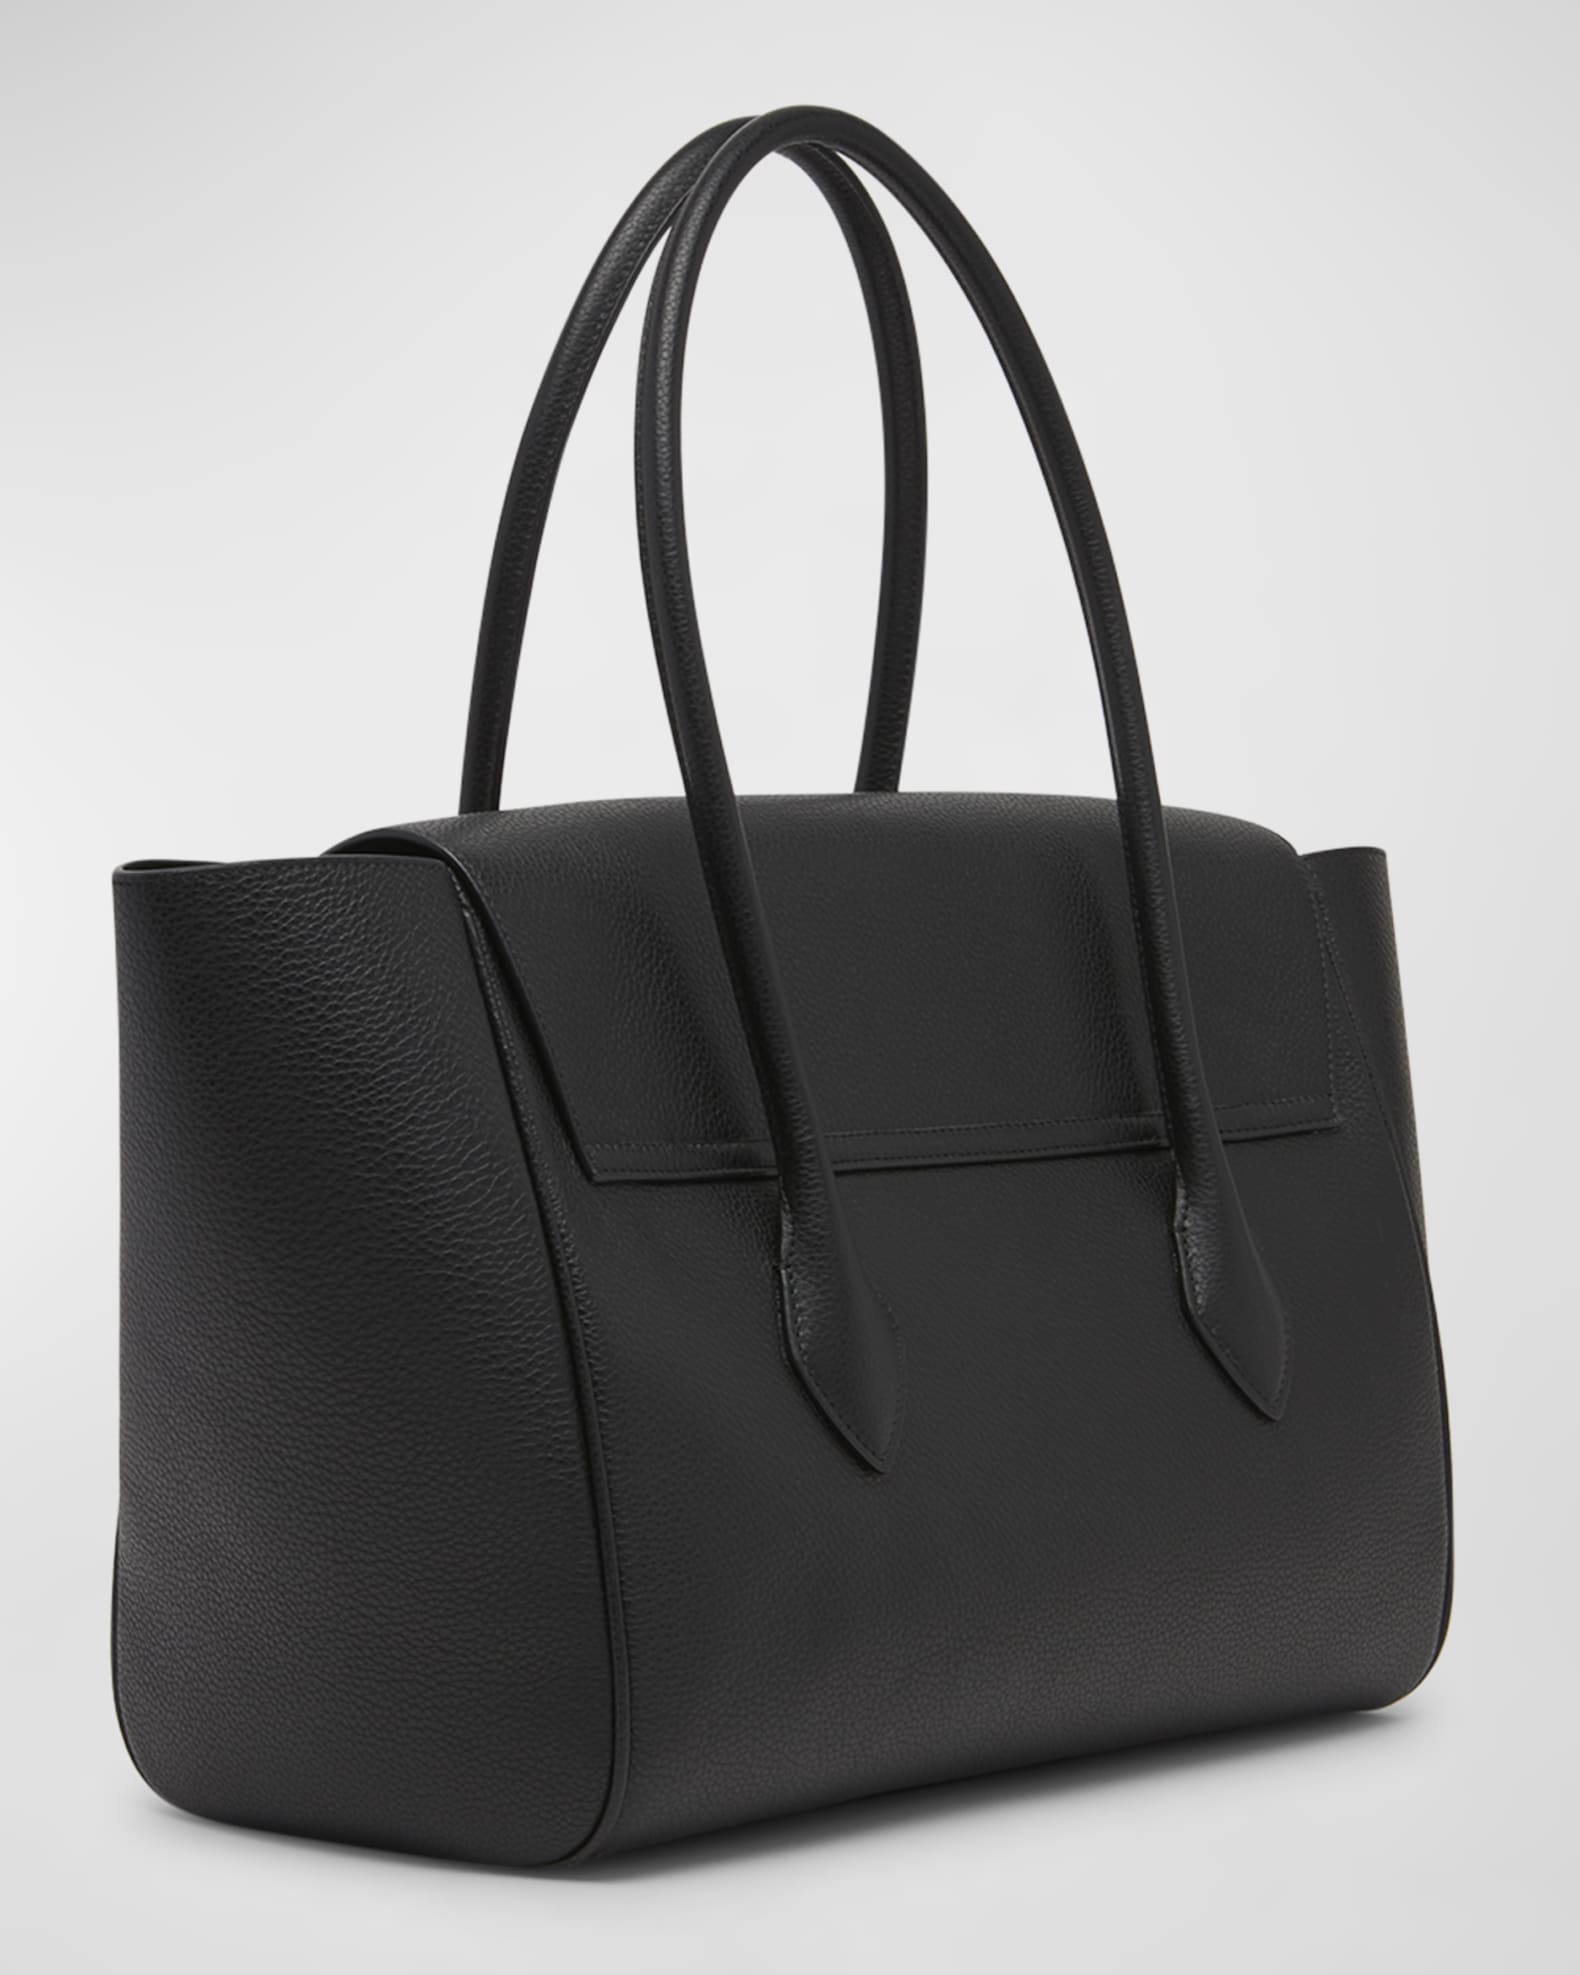 Ferragamo embossed-logo leather tote bag - Neutrals